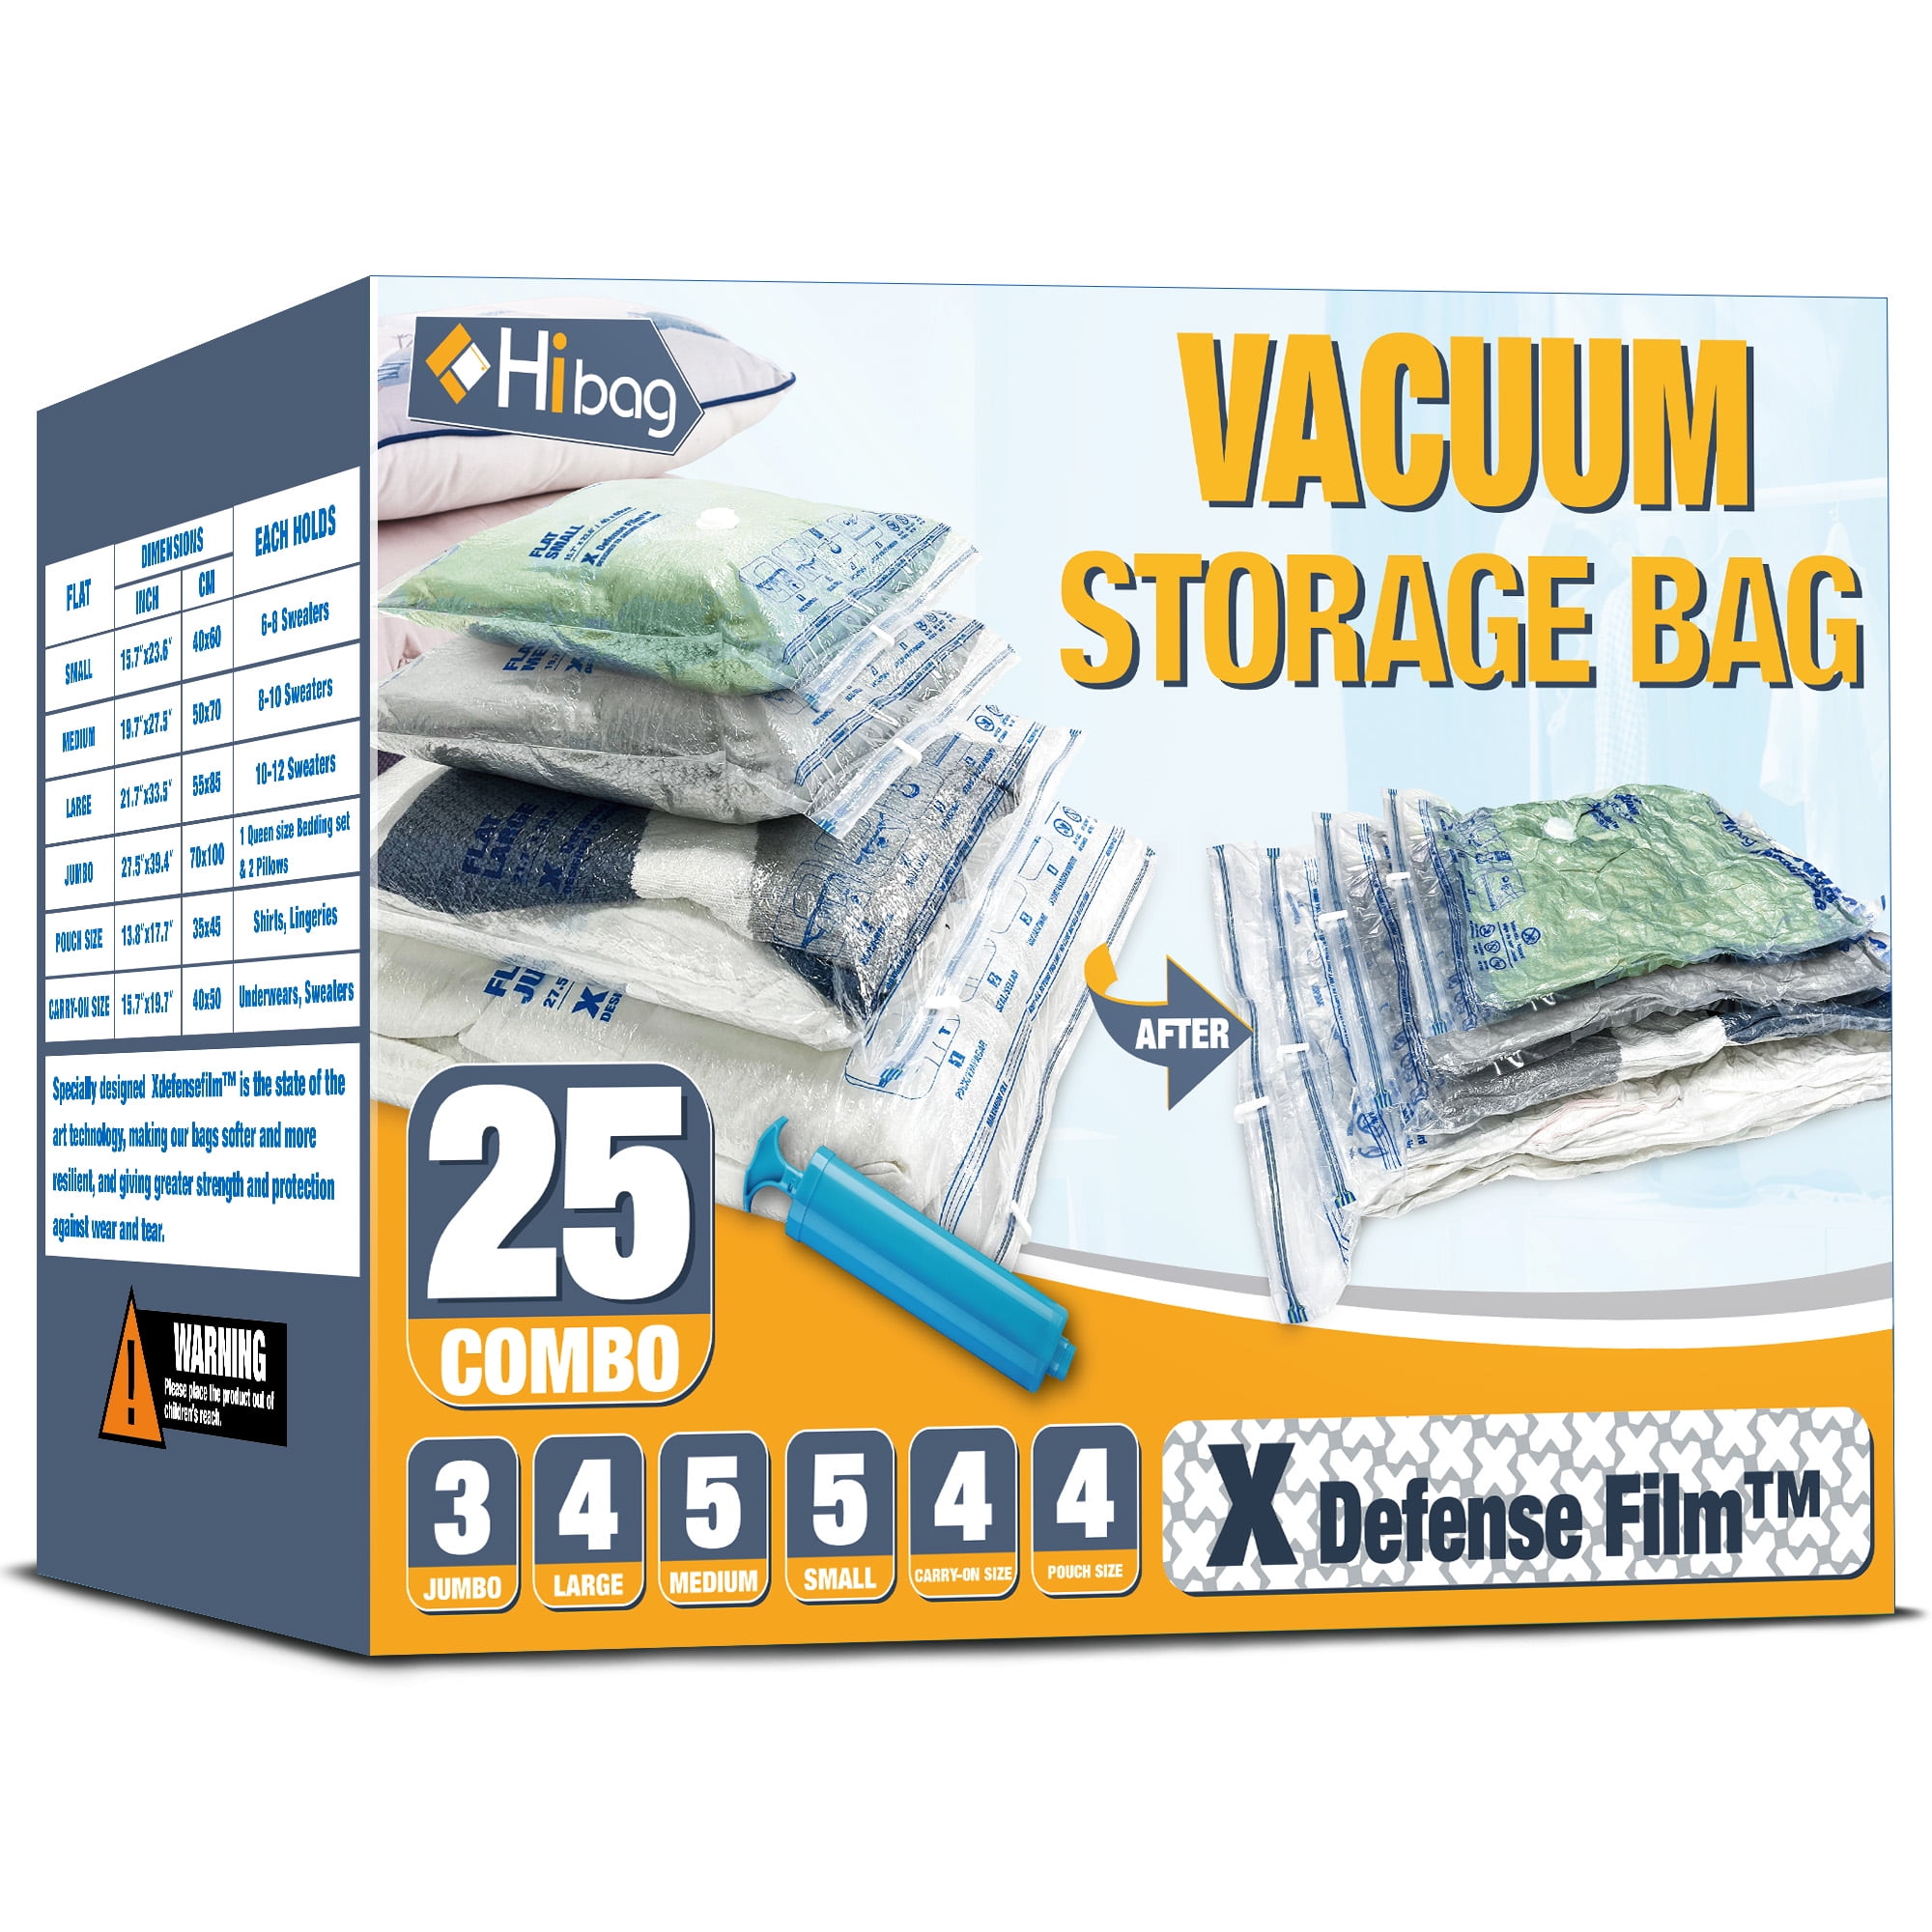 Ziploc®, Storage Bags Jumbo, Ziploc® brand